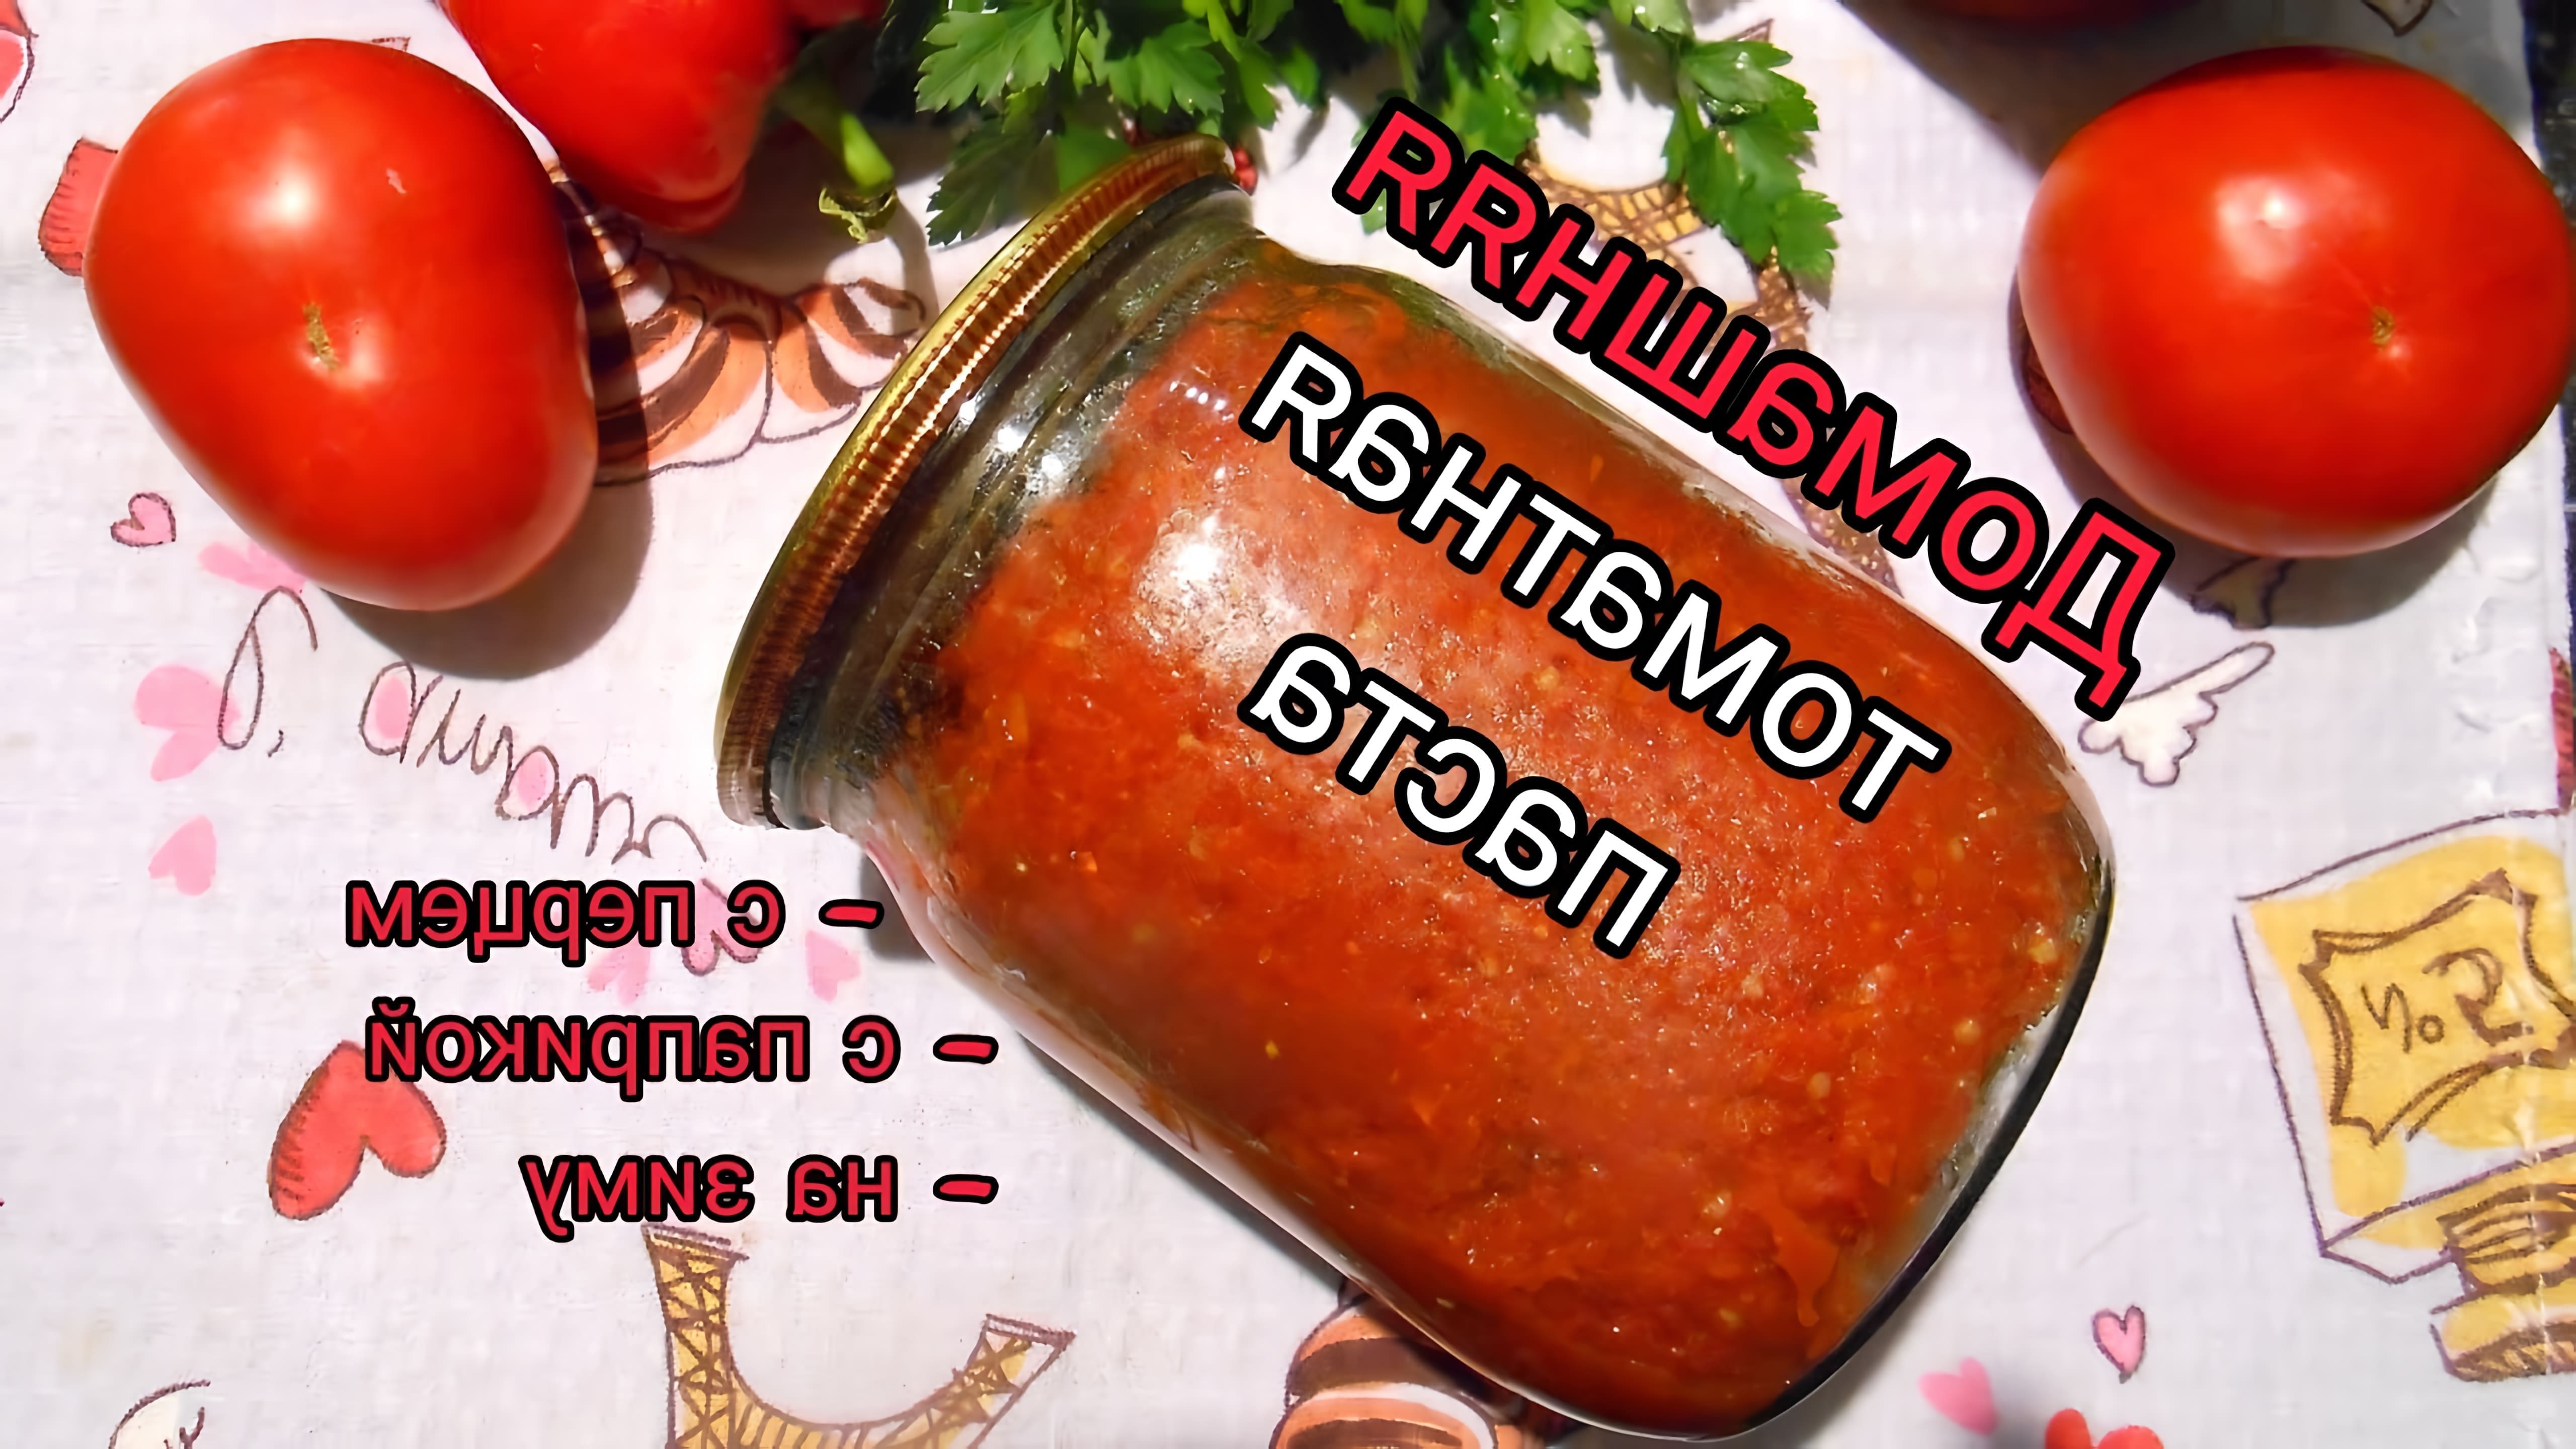 В этом видео-ролике будет показан процесс приготовления домашней томатной пасты из помидоров и болгарского перца с добавлением паприки